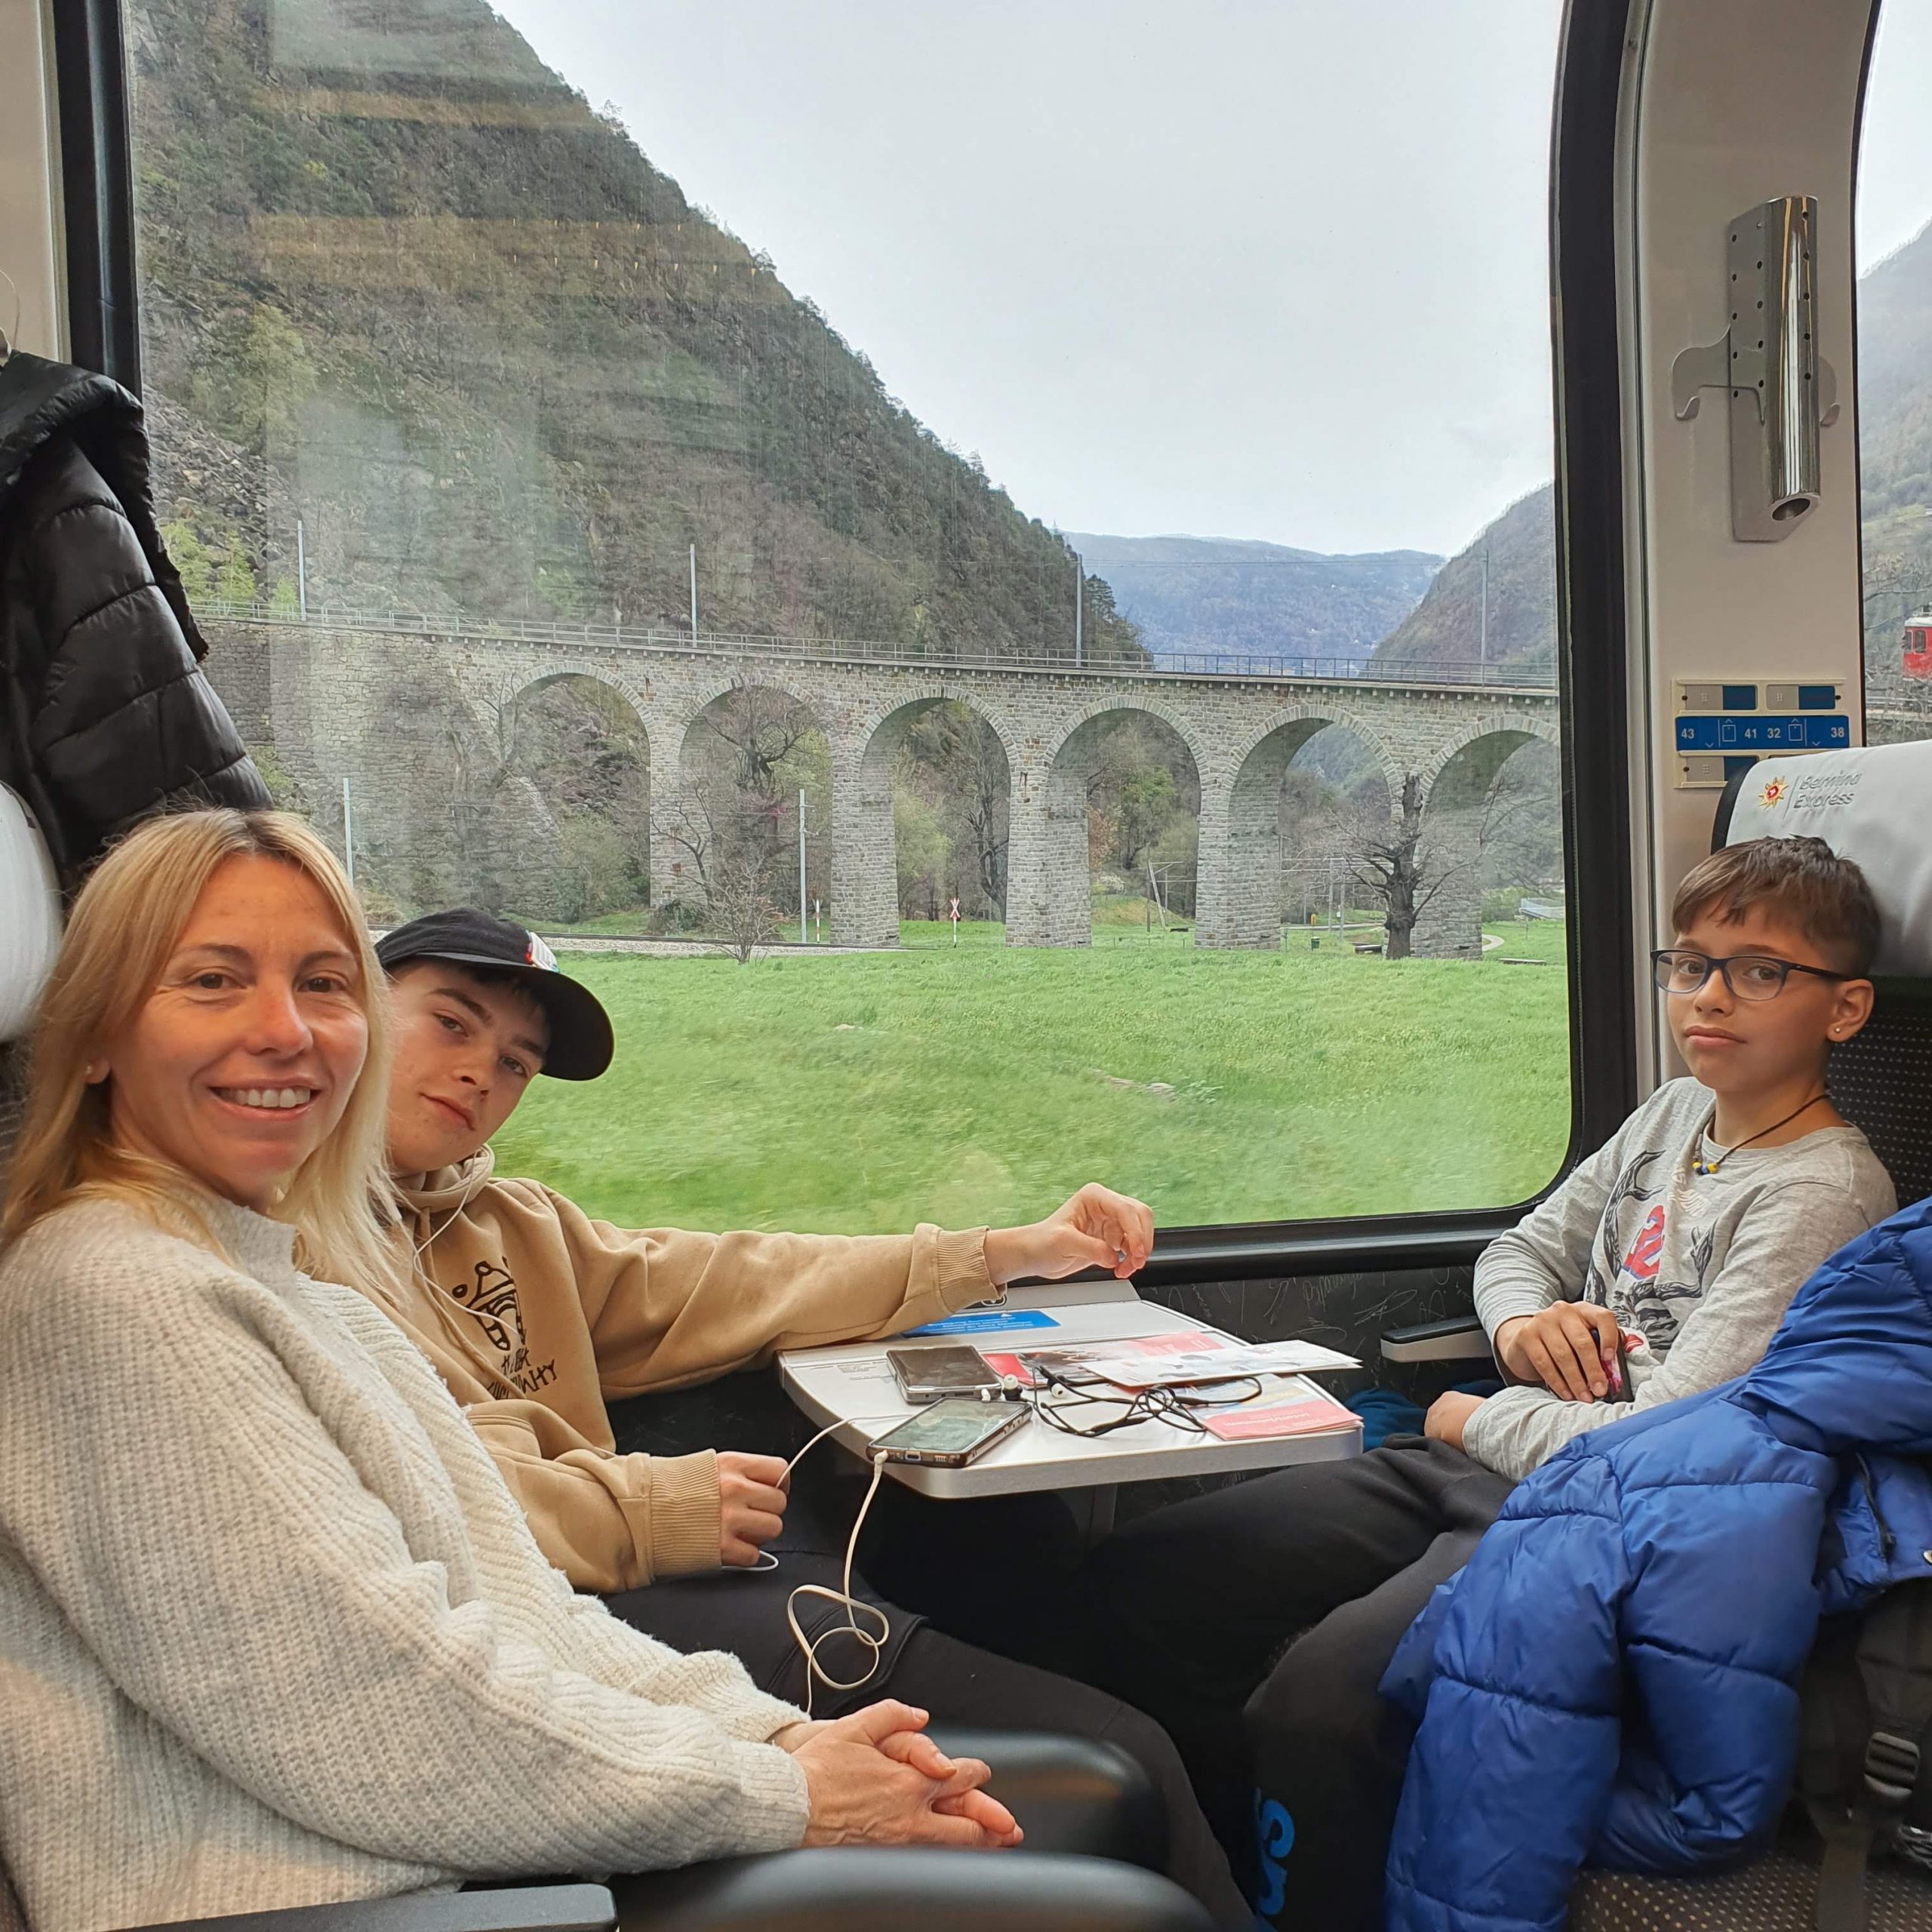 Bernina express en nuestro viaje para familias numerosas, espectacular